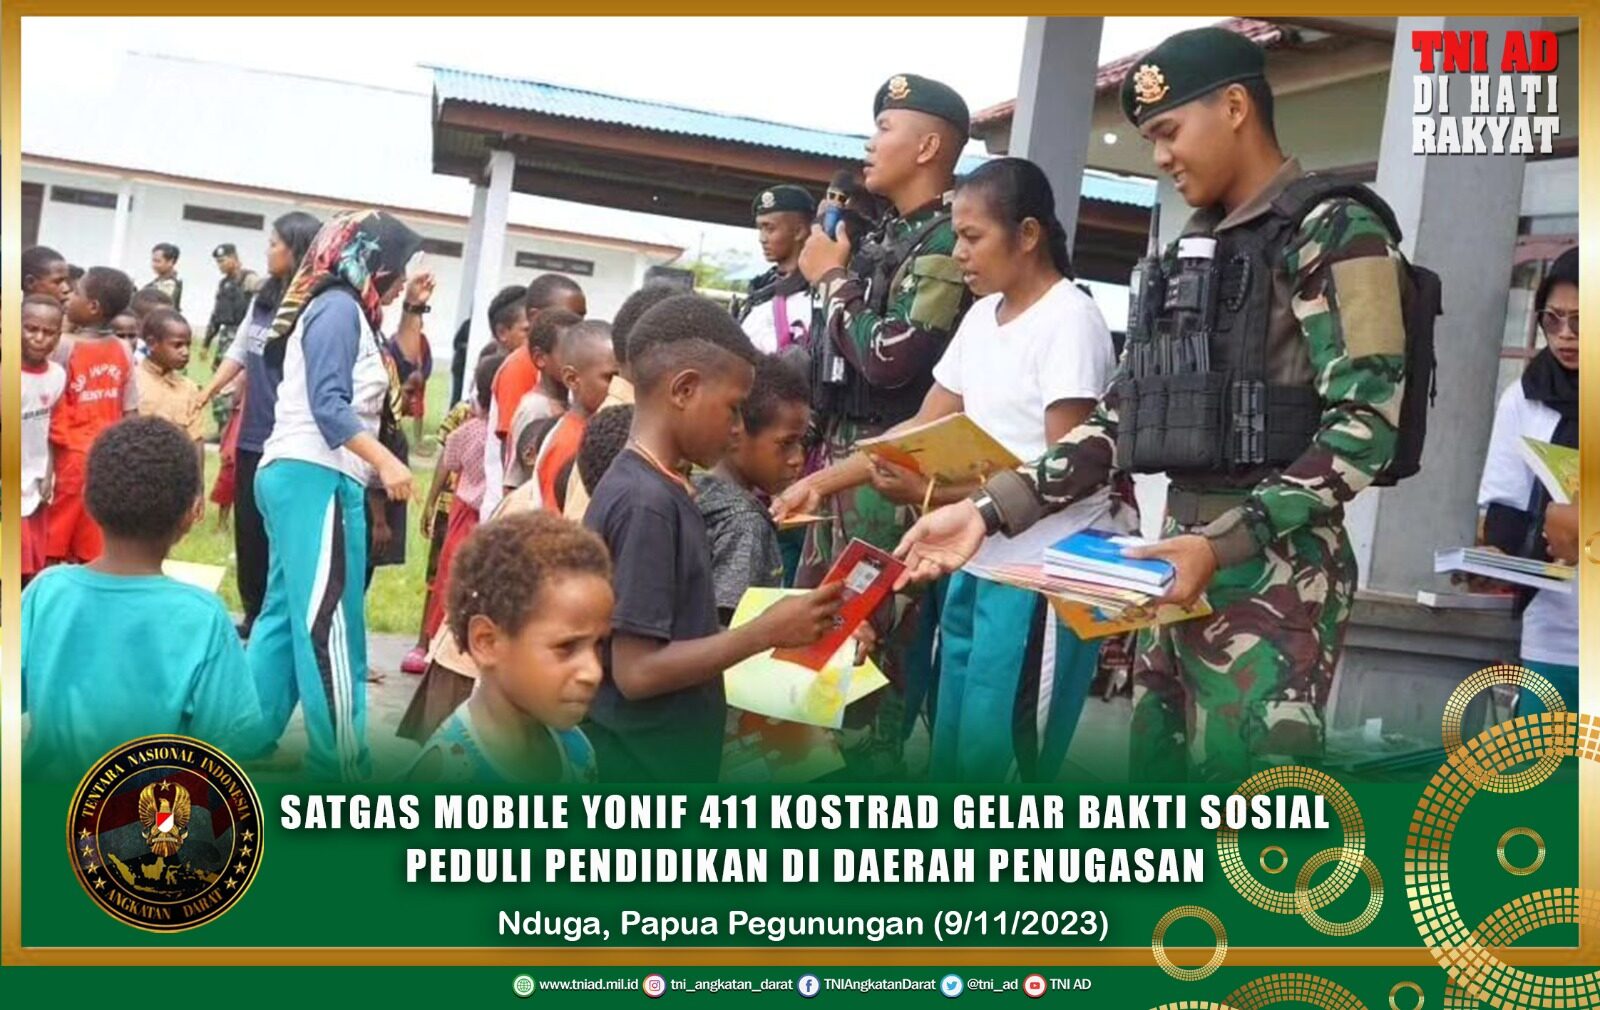 Peringati Hari Pahlawan, Satgas Mobile Yonif 411 Kostrad Gelar Bakti Sosial Peduli Pendidikan di Daerah Penugasan